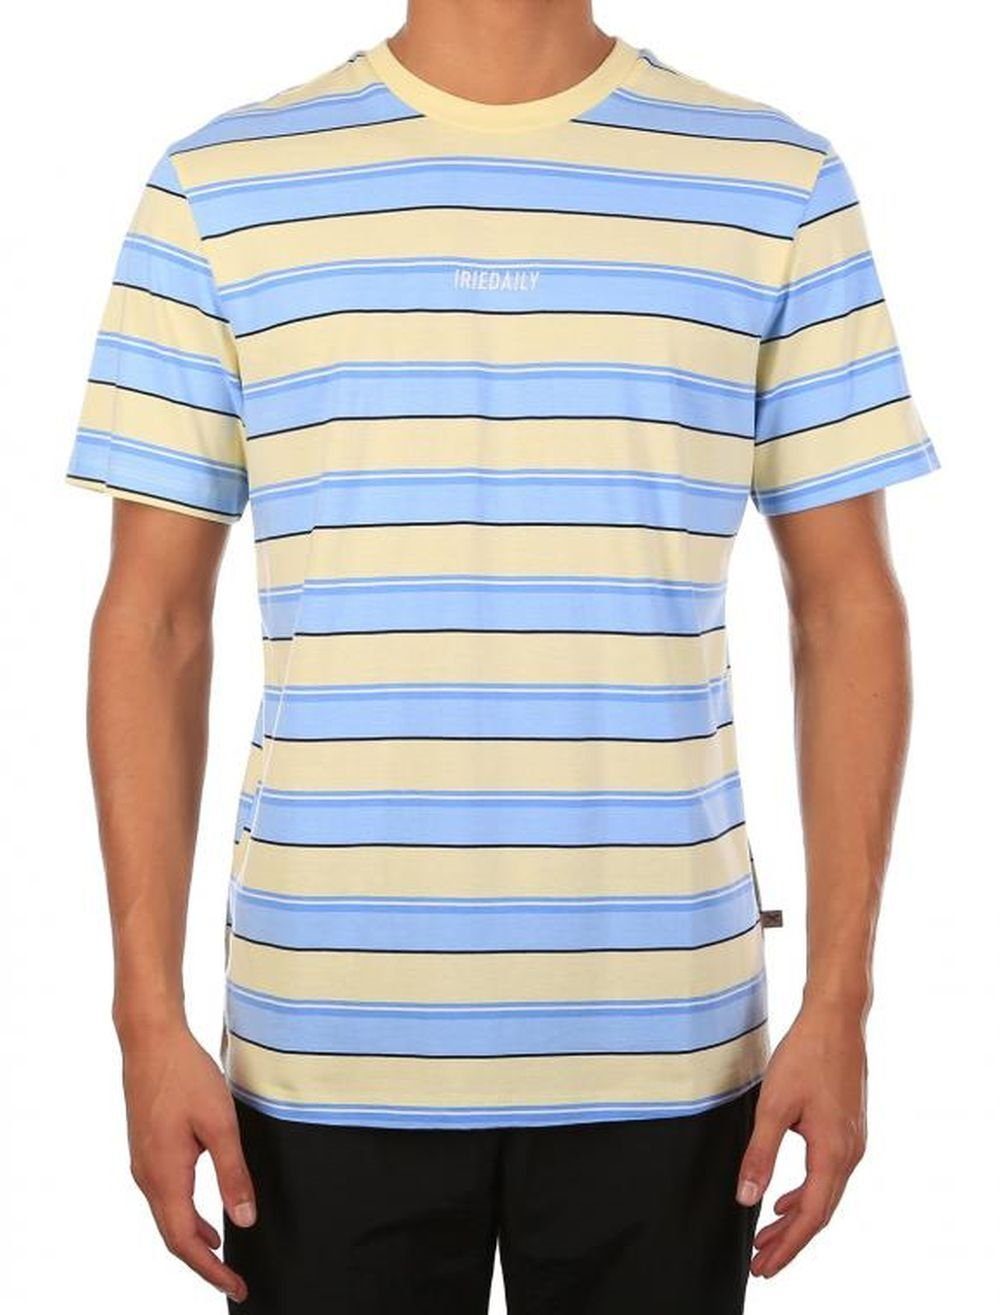 Iriedaily Stripe iriedaily T-Shirt T-Shirt Tee Tony lemonade